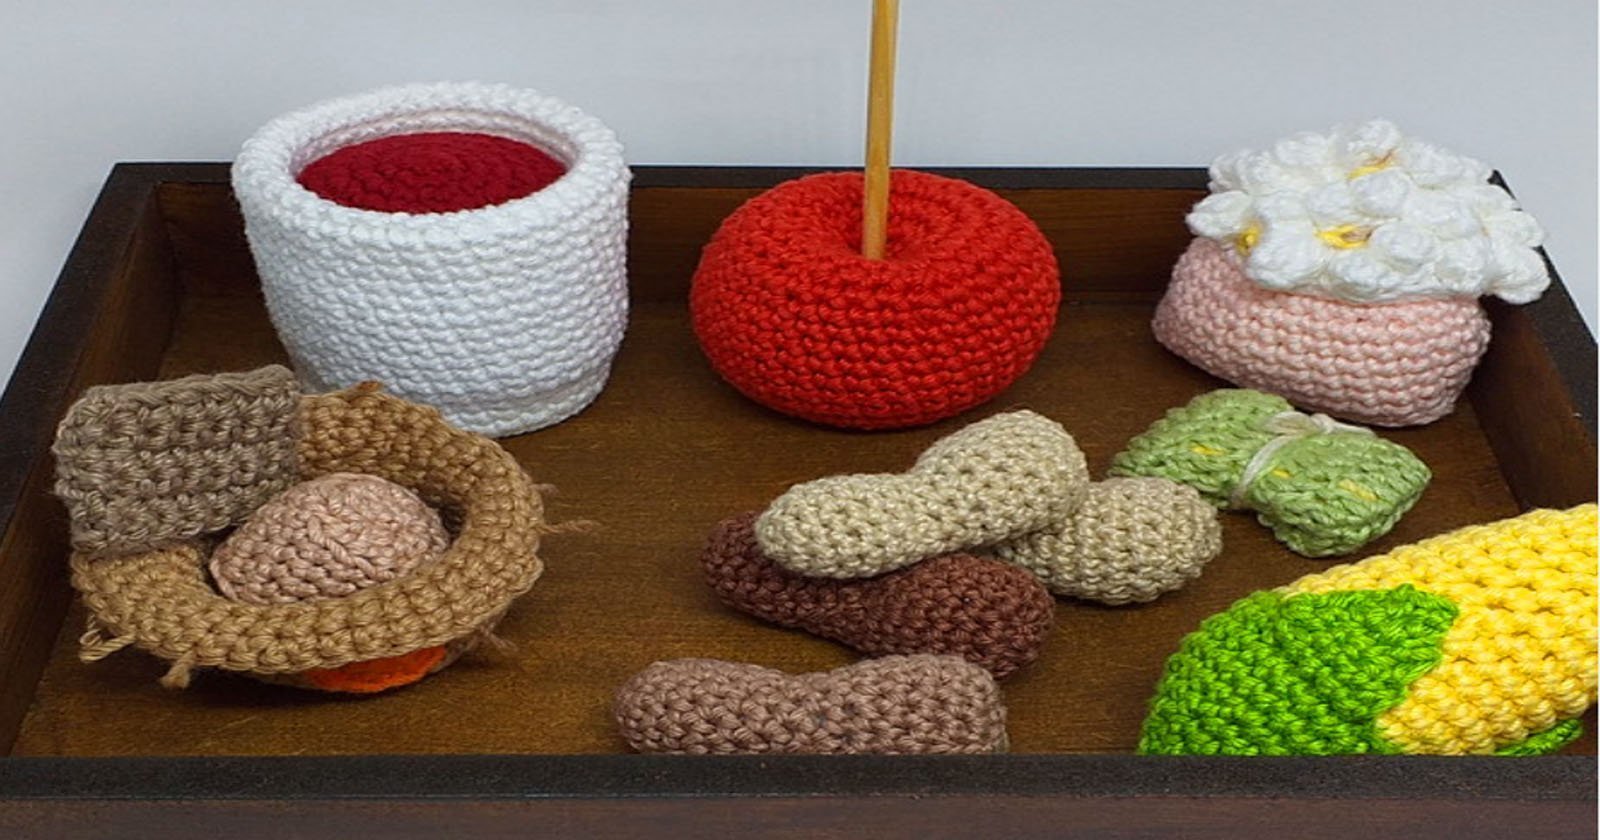 6 Ideias Incríveis de Lembrancinhas de Crochê para Festa Junina com restinhos de barbante